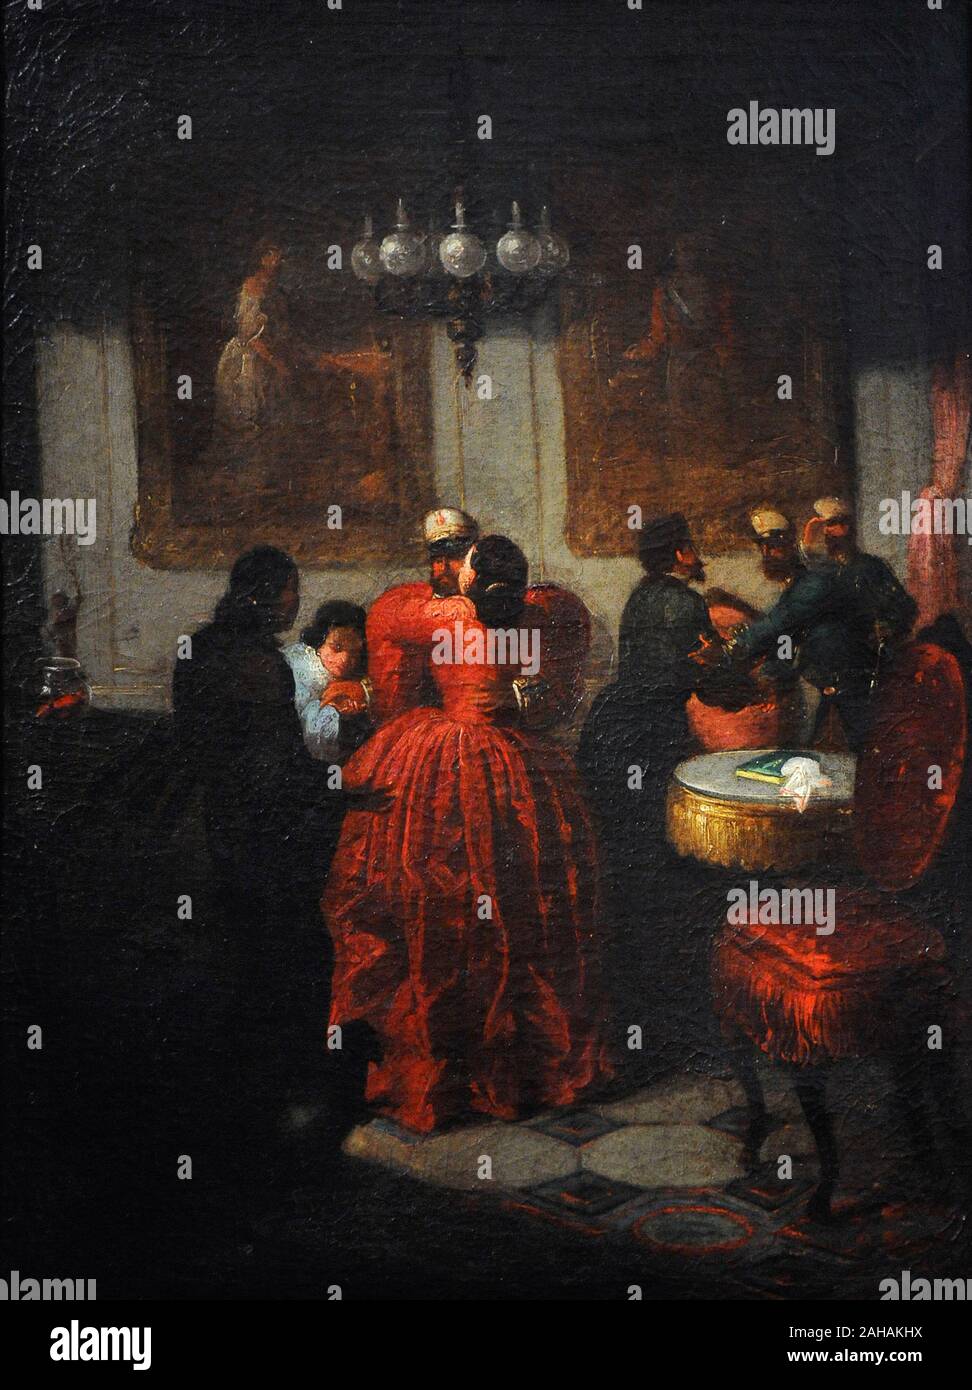 Eduardo Cano de la Peña (1823-1897). Peintre espagnol. Le retour de la guerre d'Afrique, 1861. Musée du Romantisme. Madrid. L'Espagne. Banque D'Images